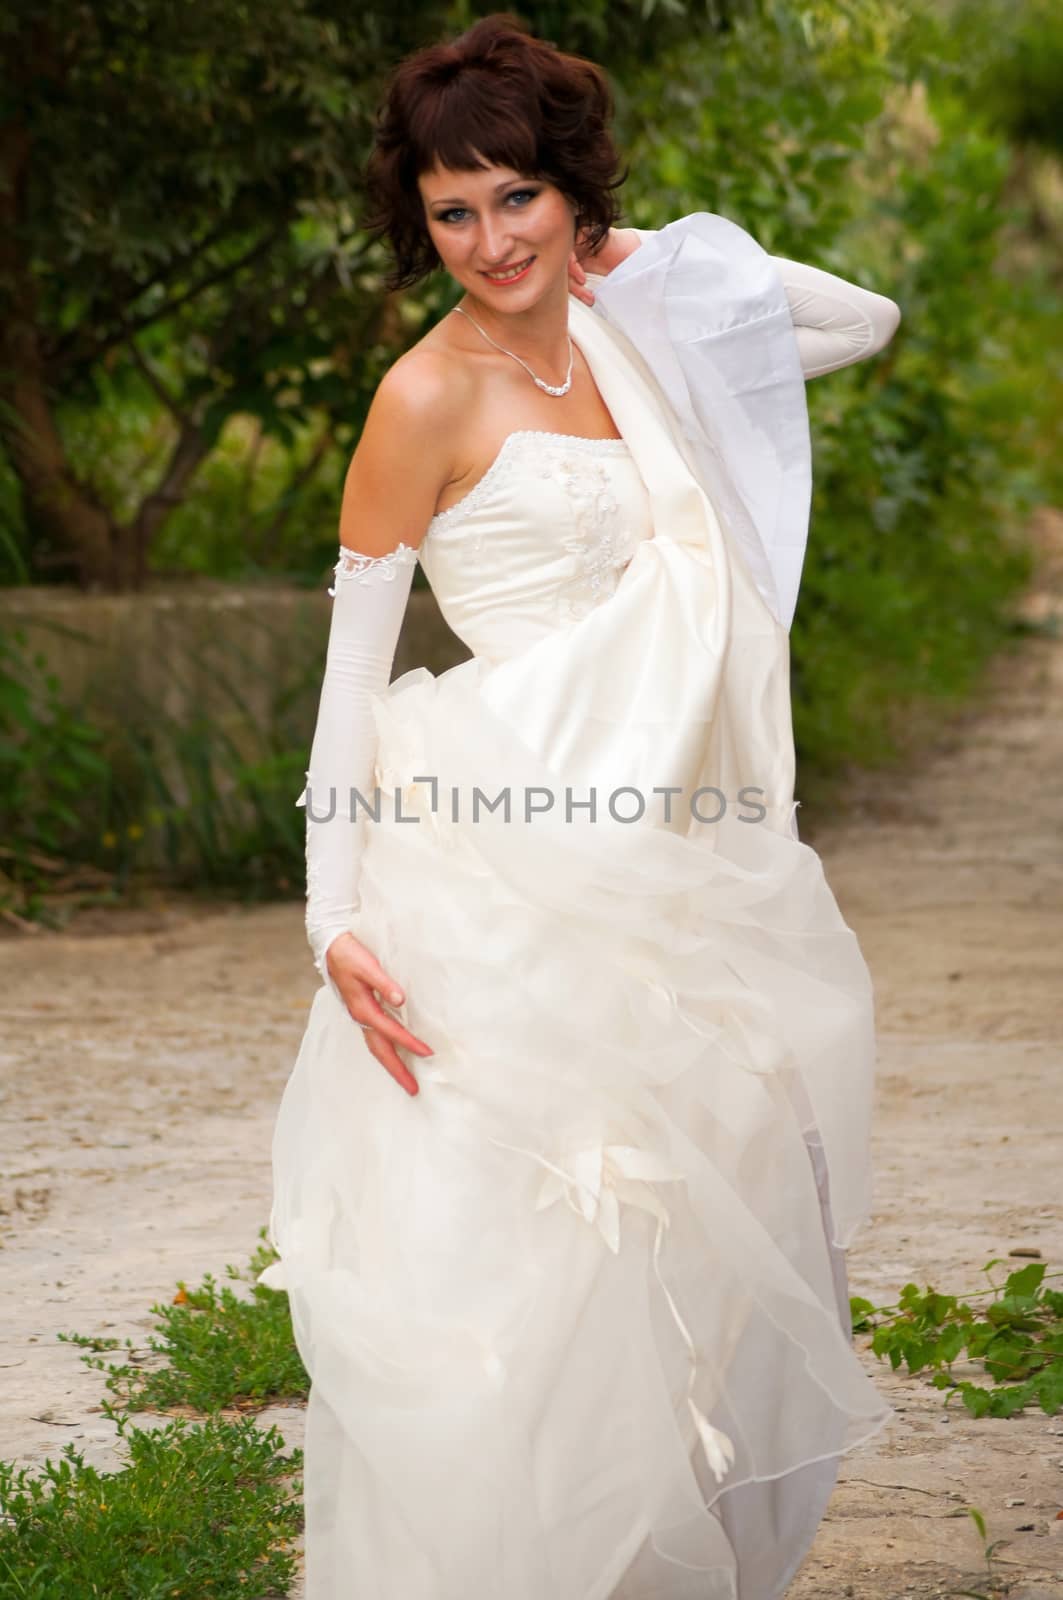 Pretty girl in a wedding dress